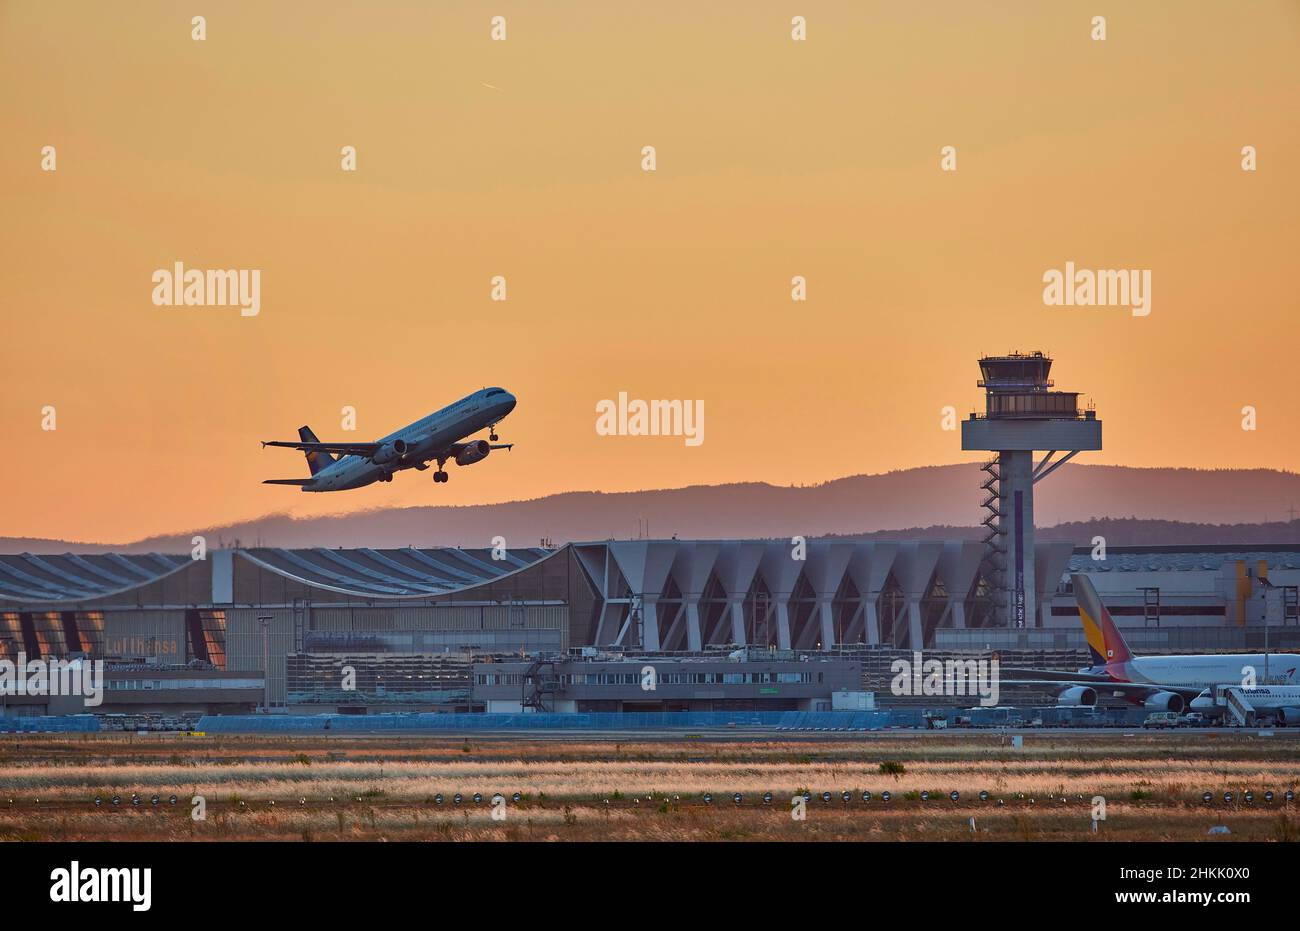 Airbus A321-200 decollo dall'aeroporto di Francoforte al crepuscolo, sullo sfondo l'hangar di manutenzione per jumbo jet, Germania, Assia, Francoforte Foto Stock